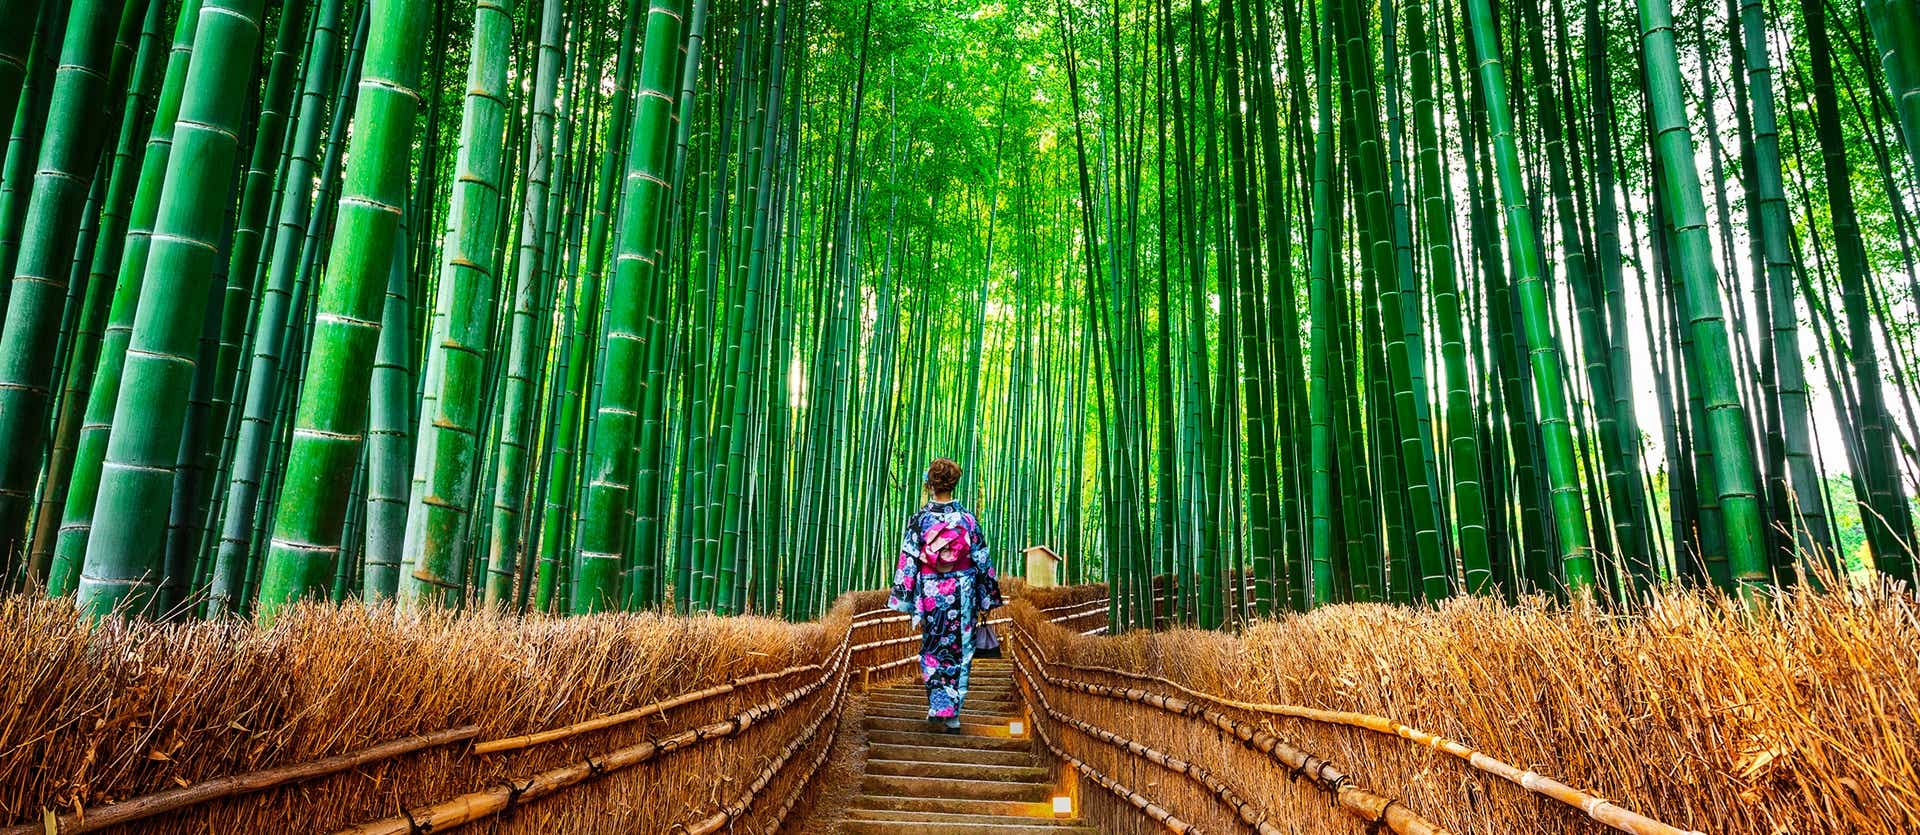 Bamboo forest <span class="iconos separador"></span> Kyoto